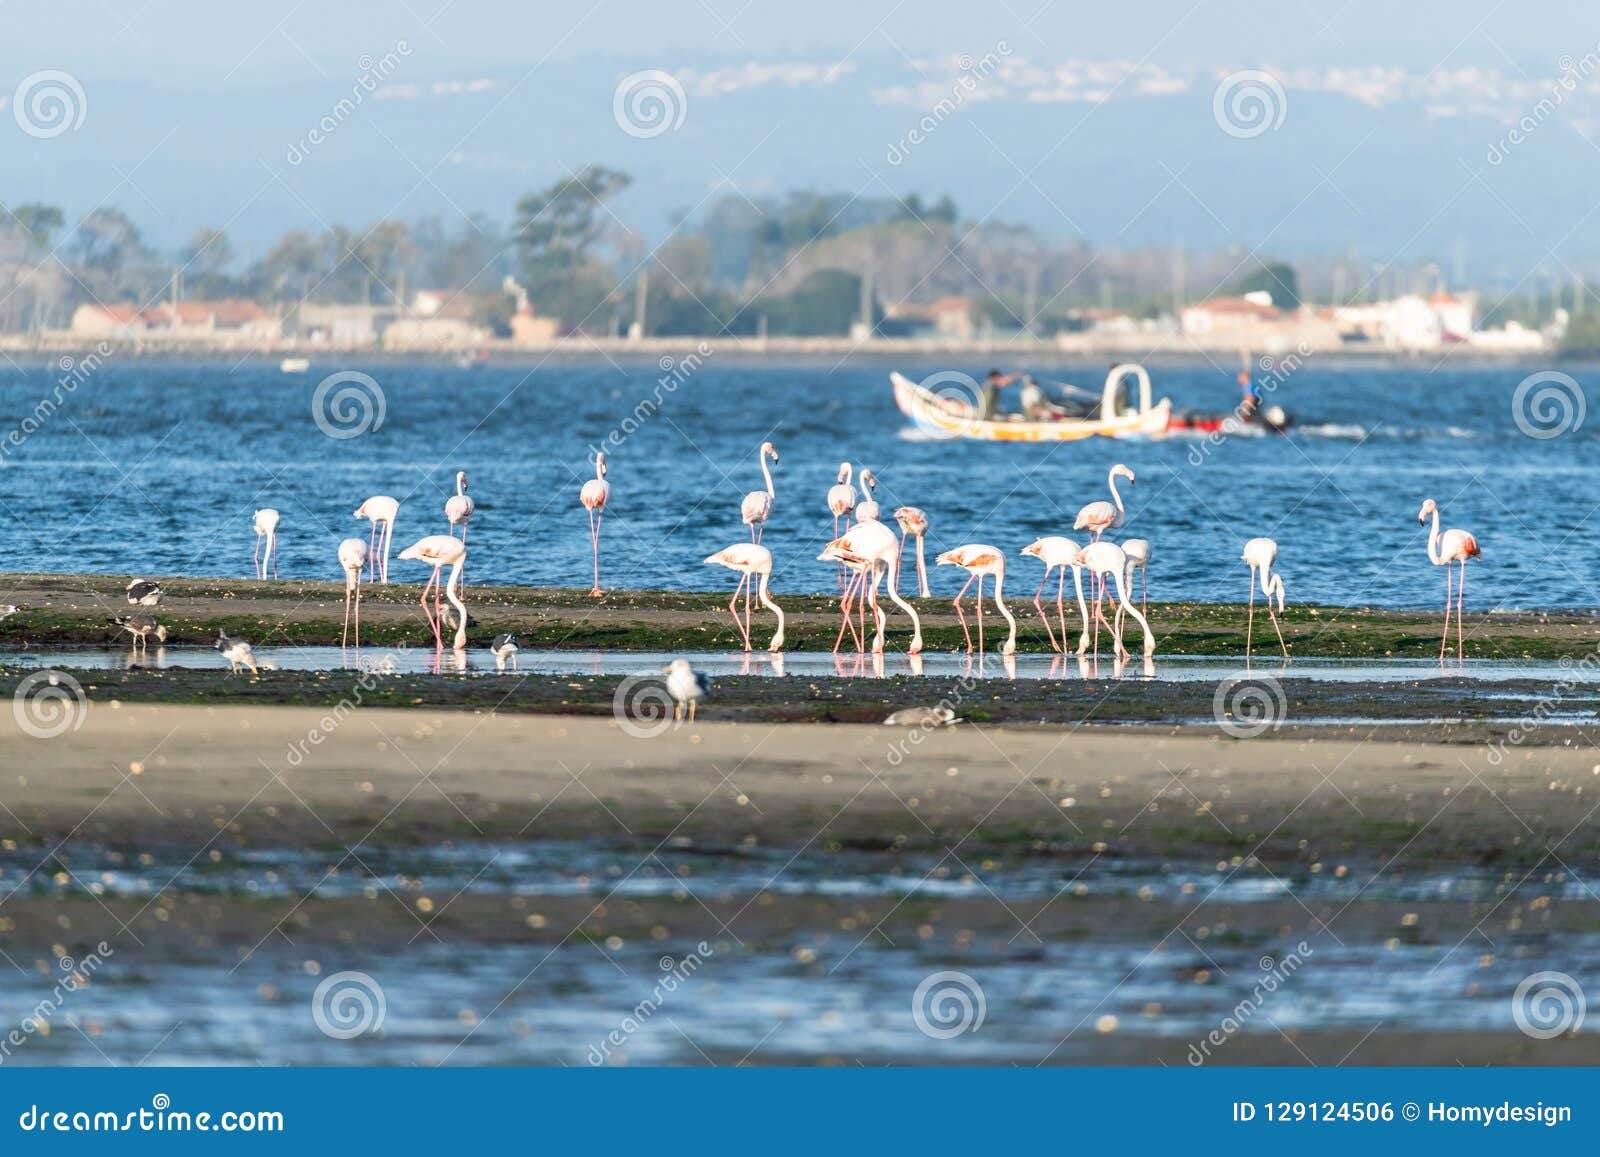 flamingos at ria de aveiro delta